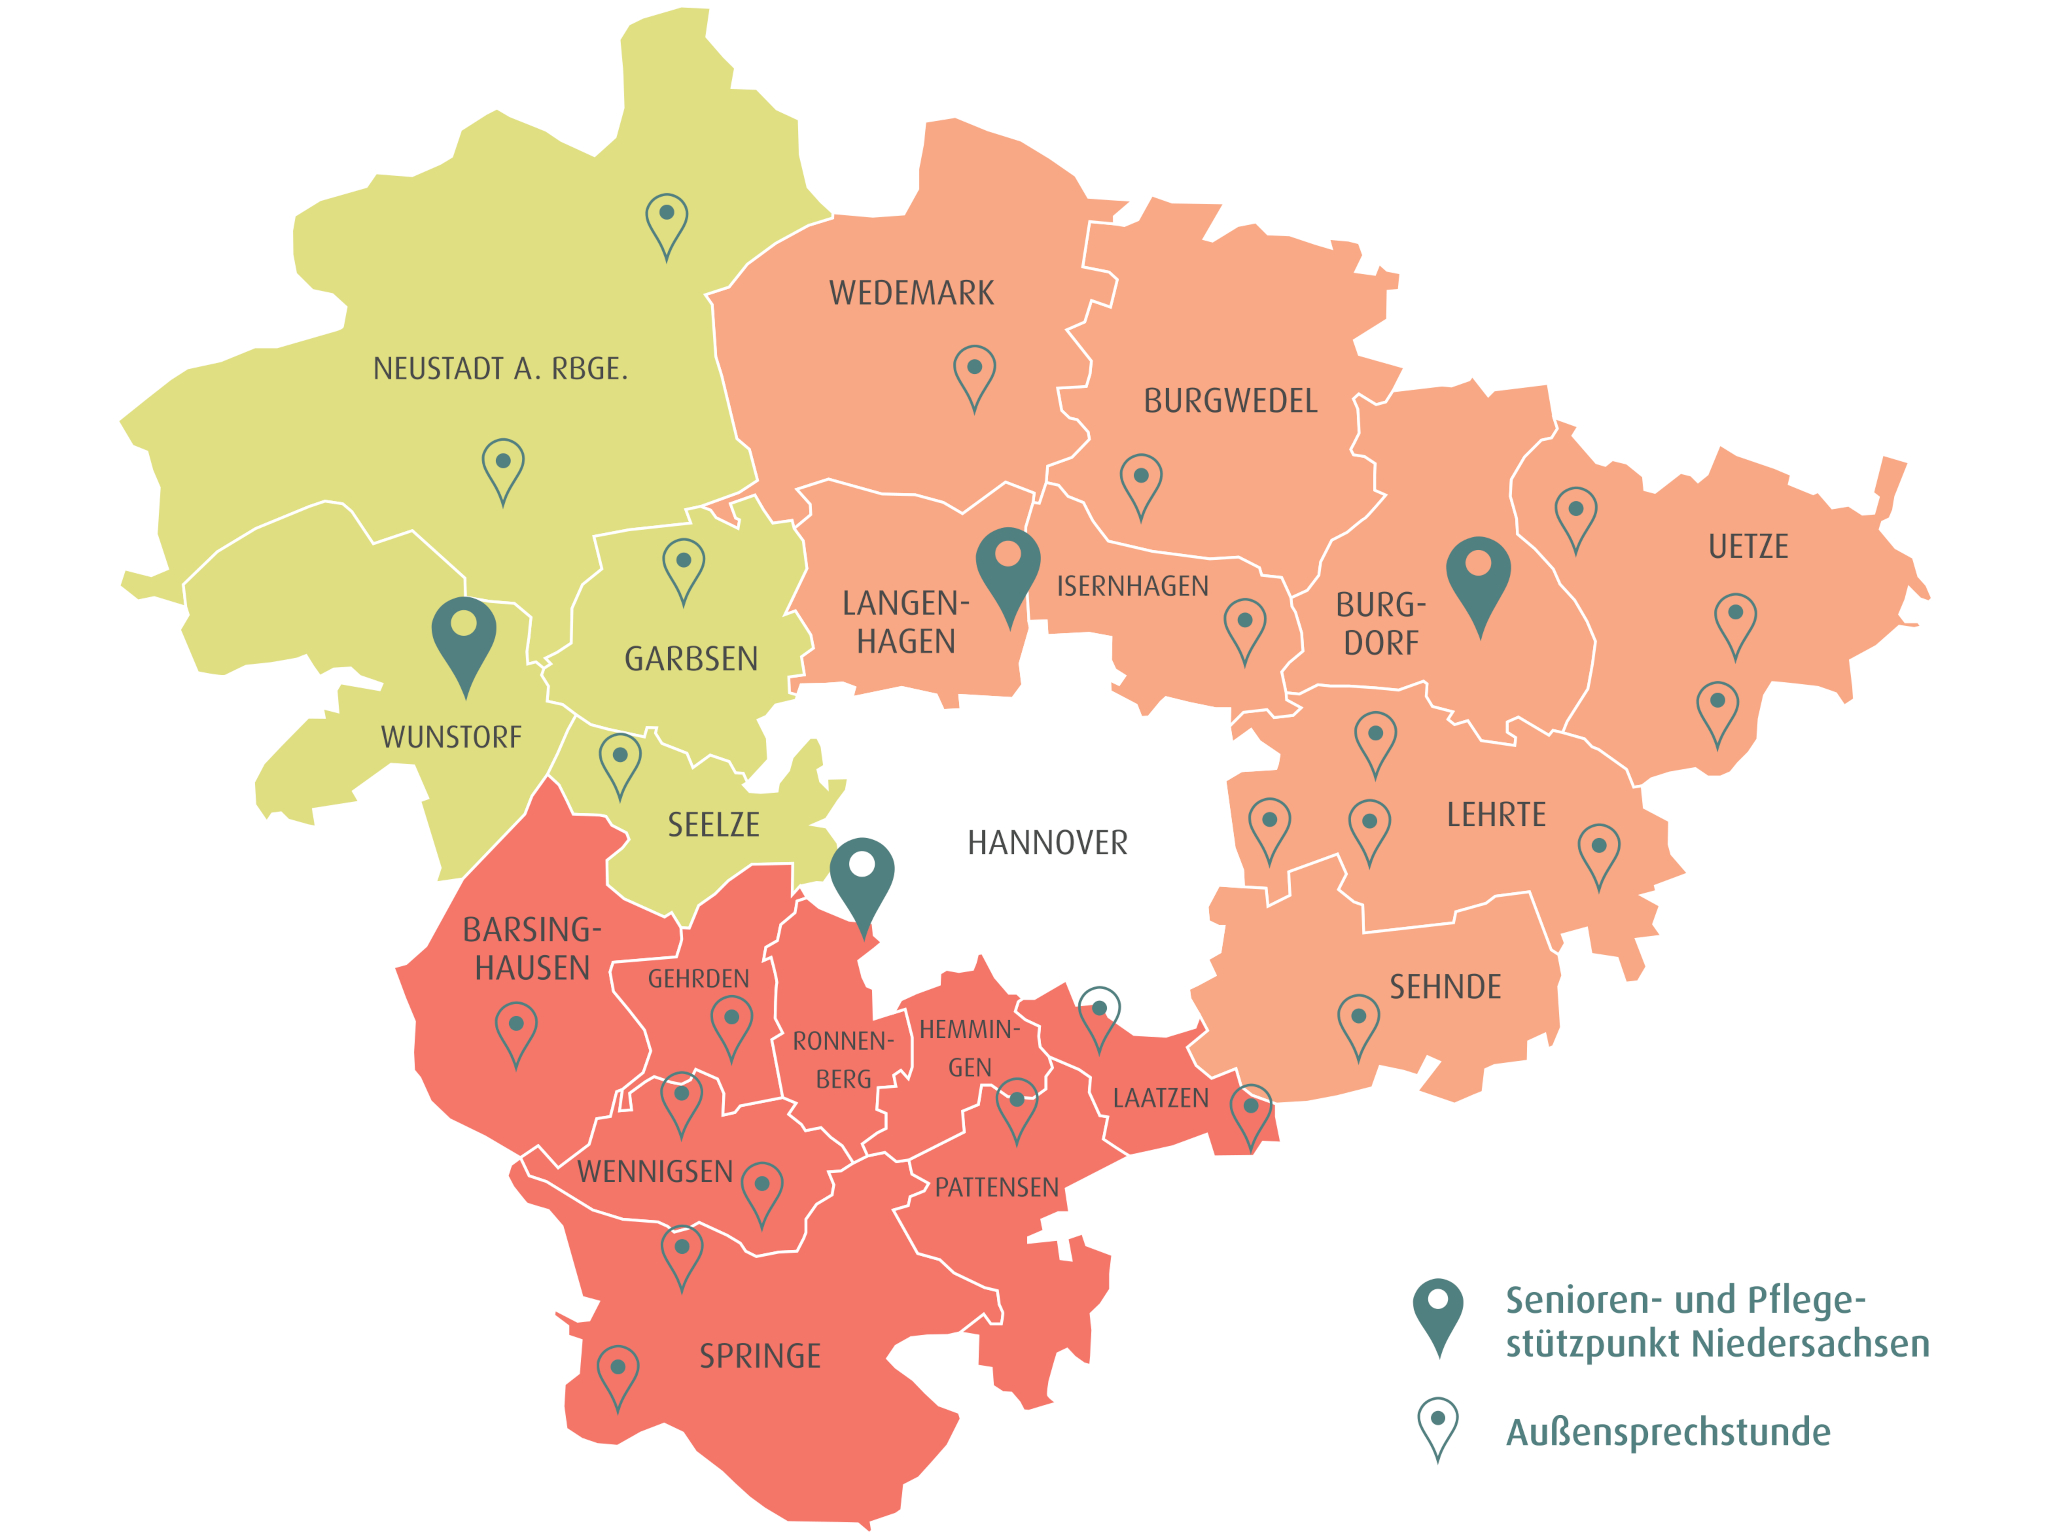 Karte der Region Hannover: Gebiete sind dem Zuständigkeitsgebiet der Senioren- und Pflegestützpunkte entsprechend unterschiedlich eingefärbt.